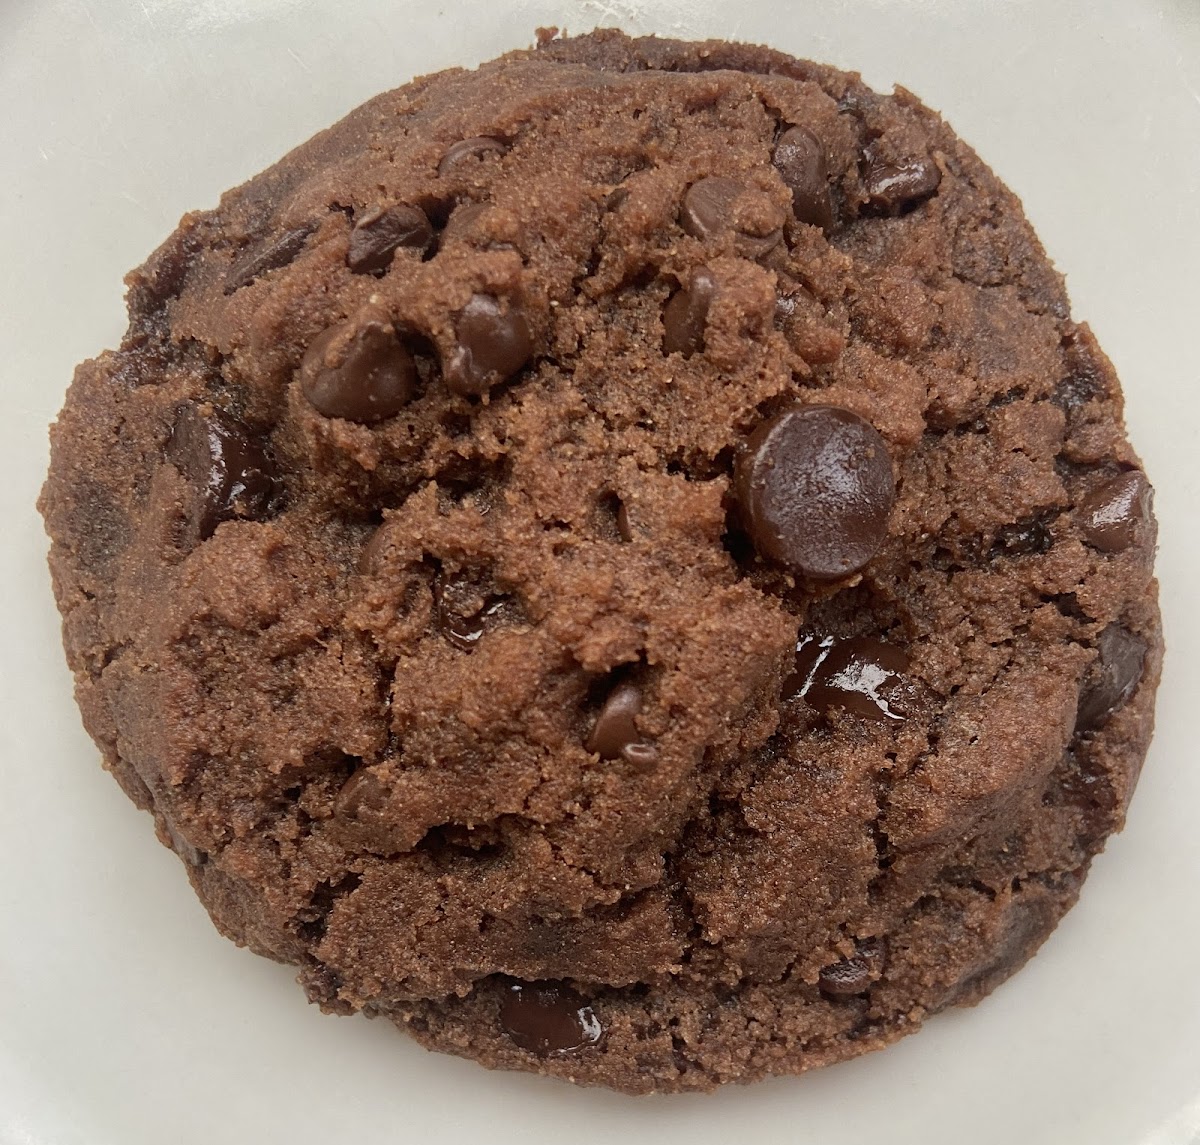 Chocolate Chip Brownie Cookie - no top 9 allergen ingredients, gluten free and vegan